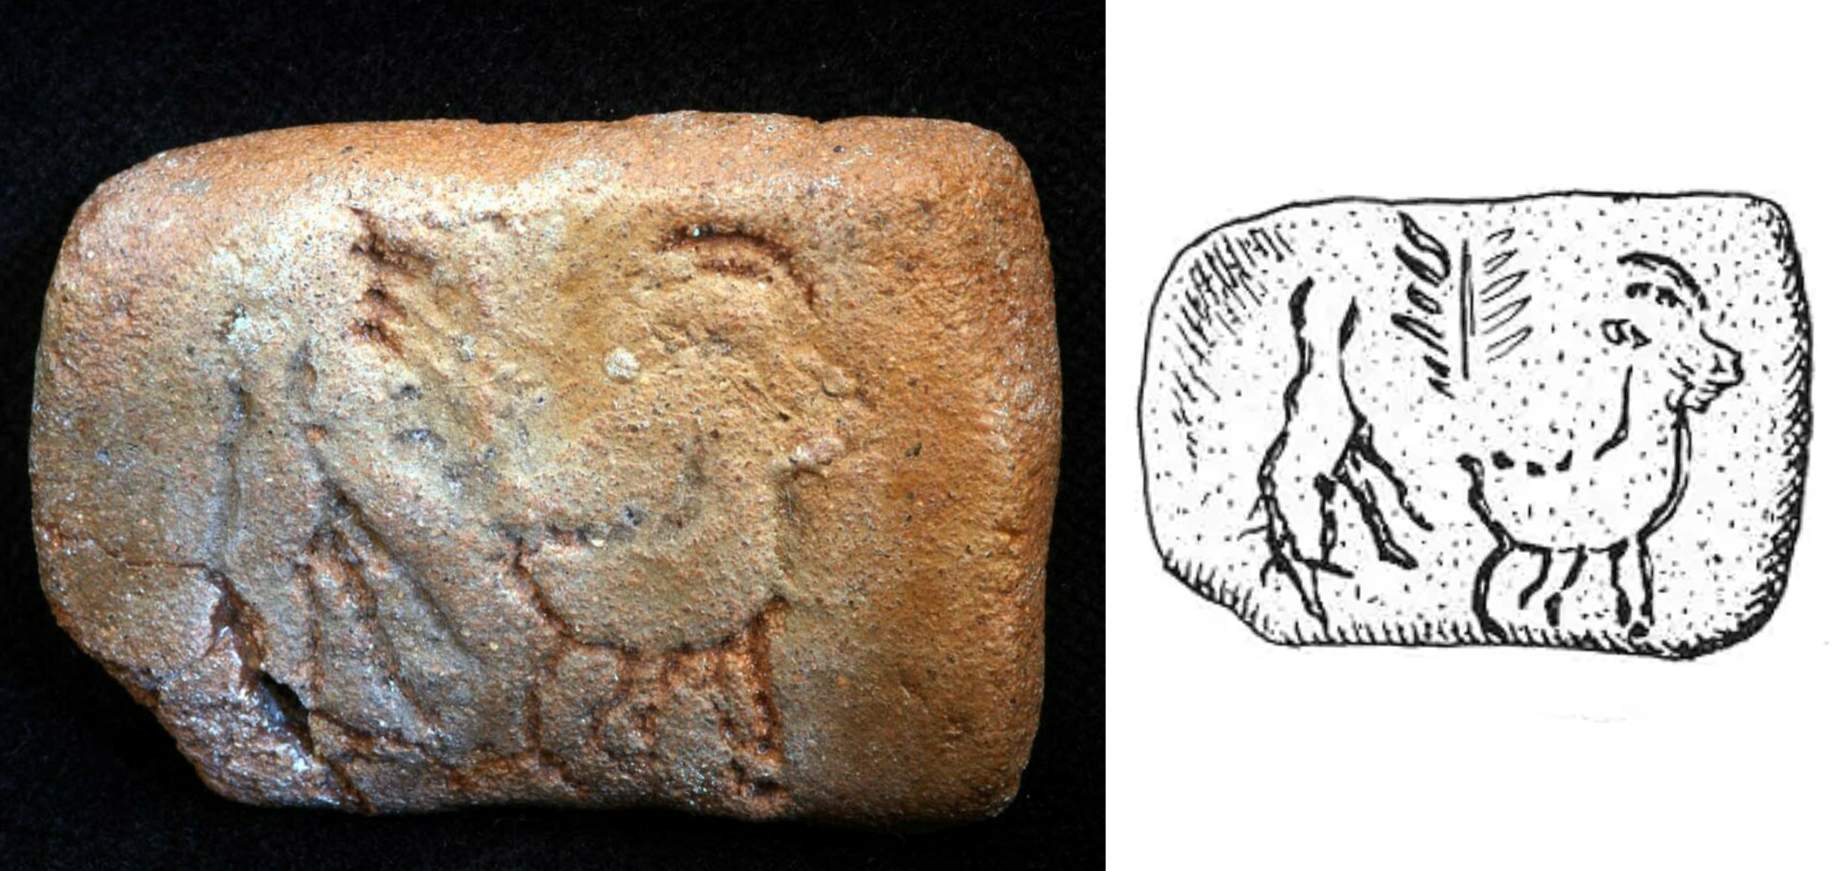 Una de las tablillas muestra dos animales (¿cabras?) Y un árbol, lo que sugiere un sacrificio en celebración del regreso de una nueva vida, finales del sexto milenio ac. 5300-5000